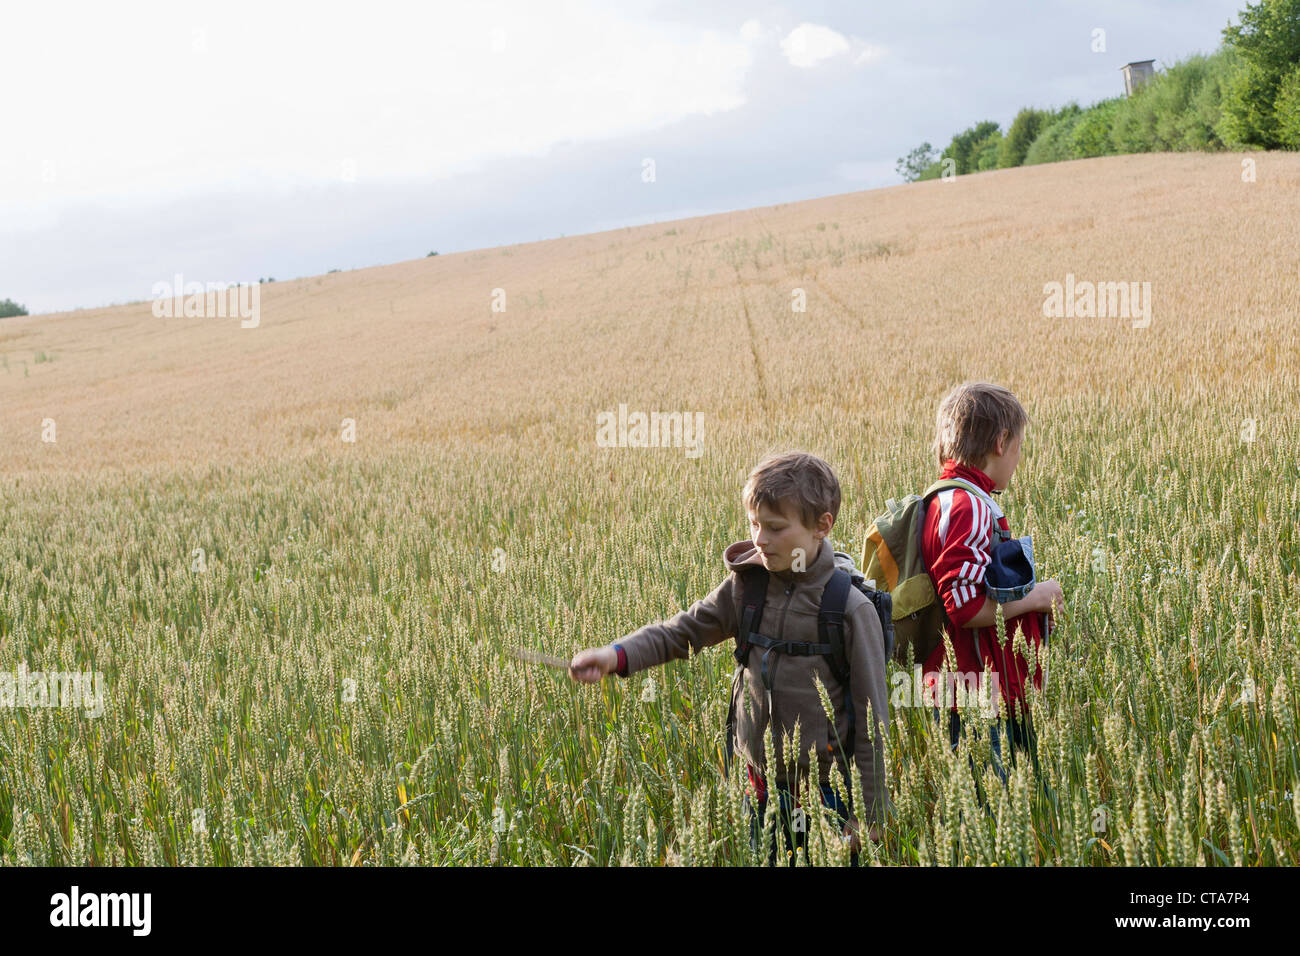 Zwei jungen im Getreidefeld, Lankau, Schleswig-Holstein, Deutschland Stockfoto